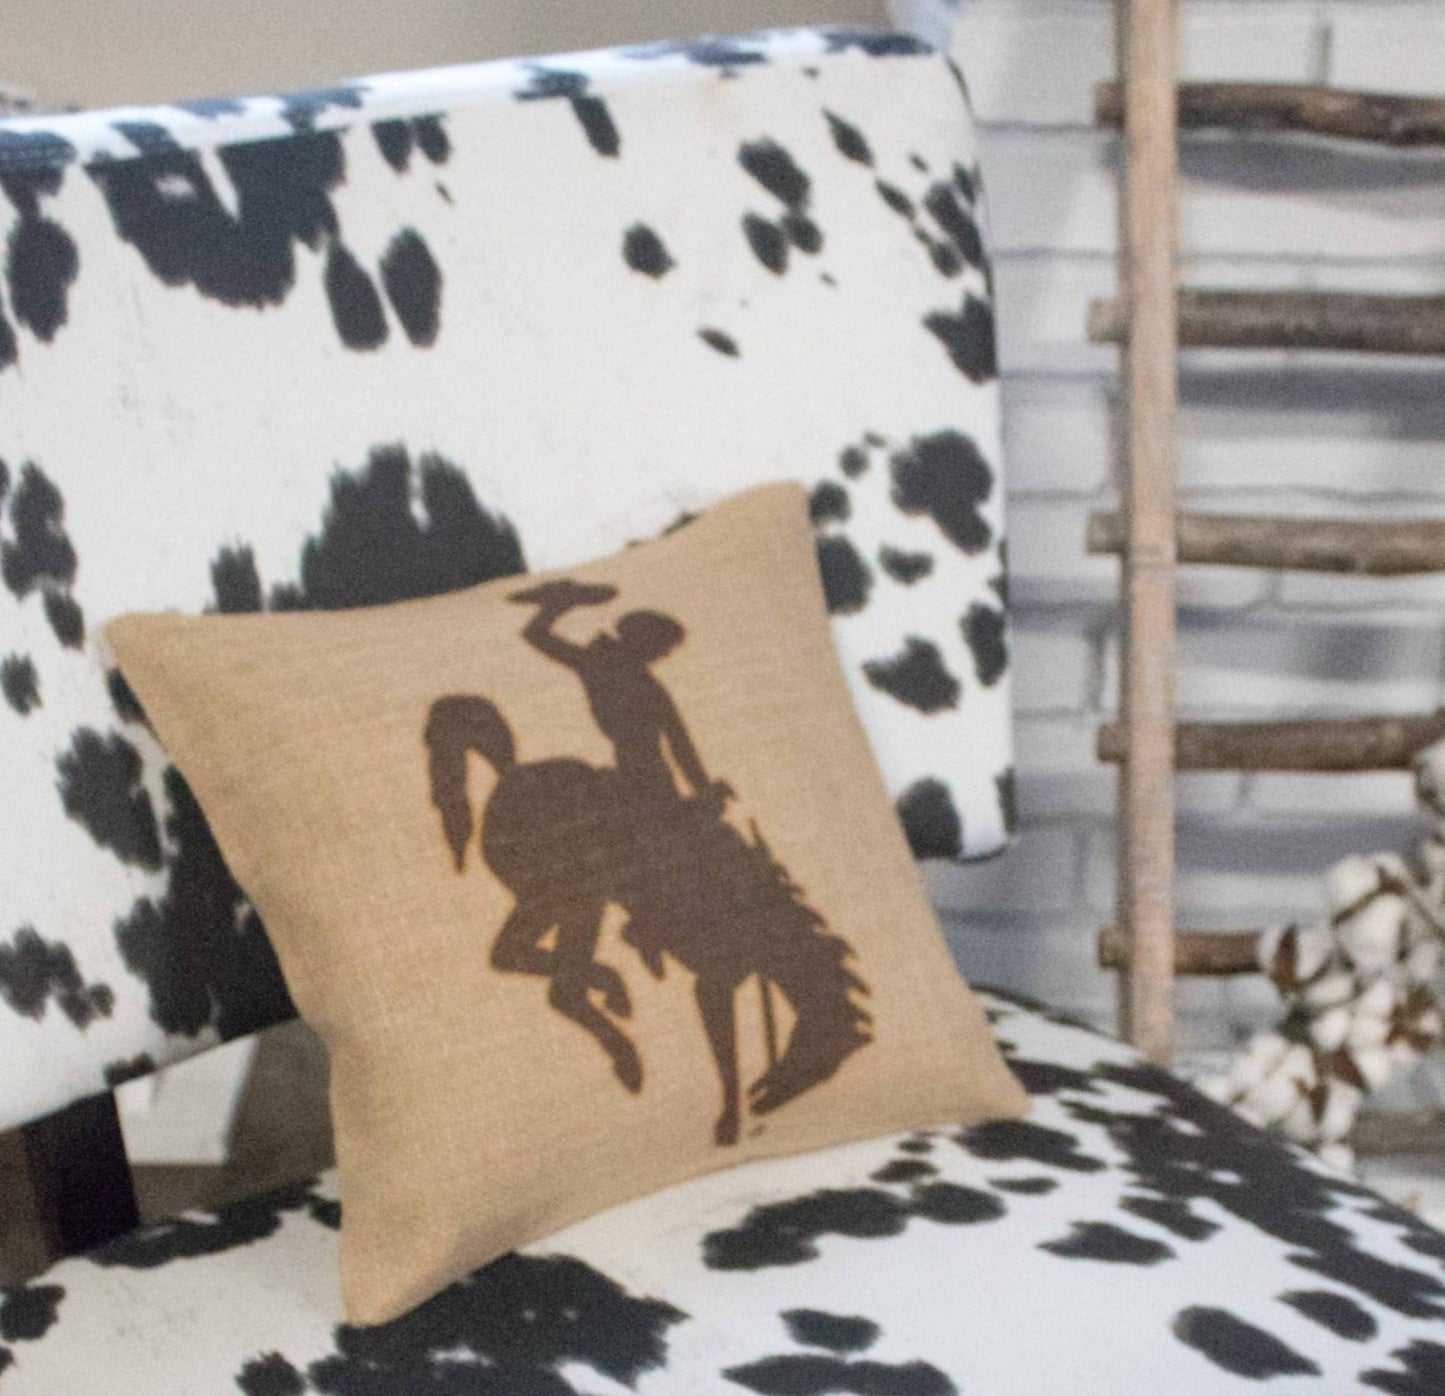 Brown & Gold Wyoming Bucking Horse Throw Pillow